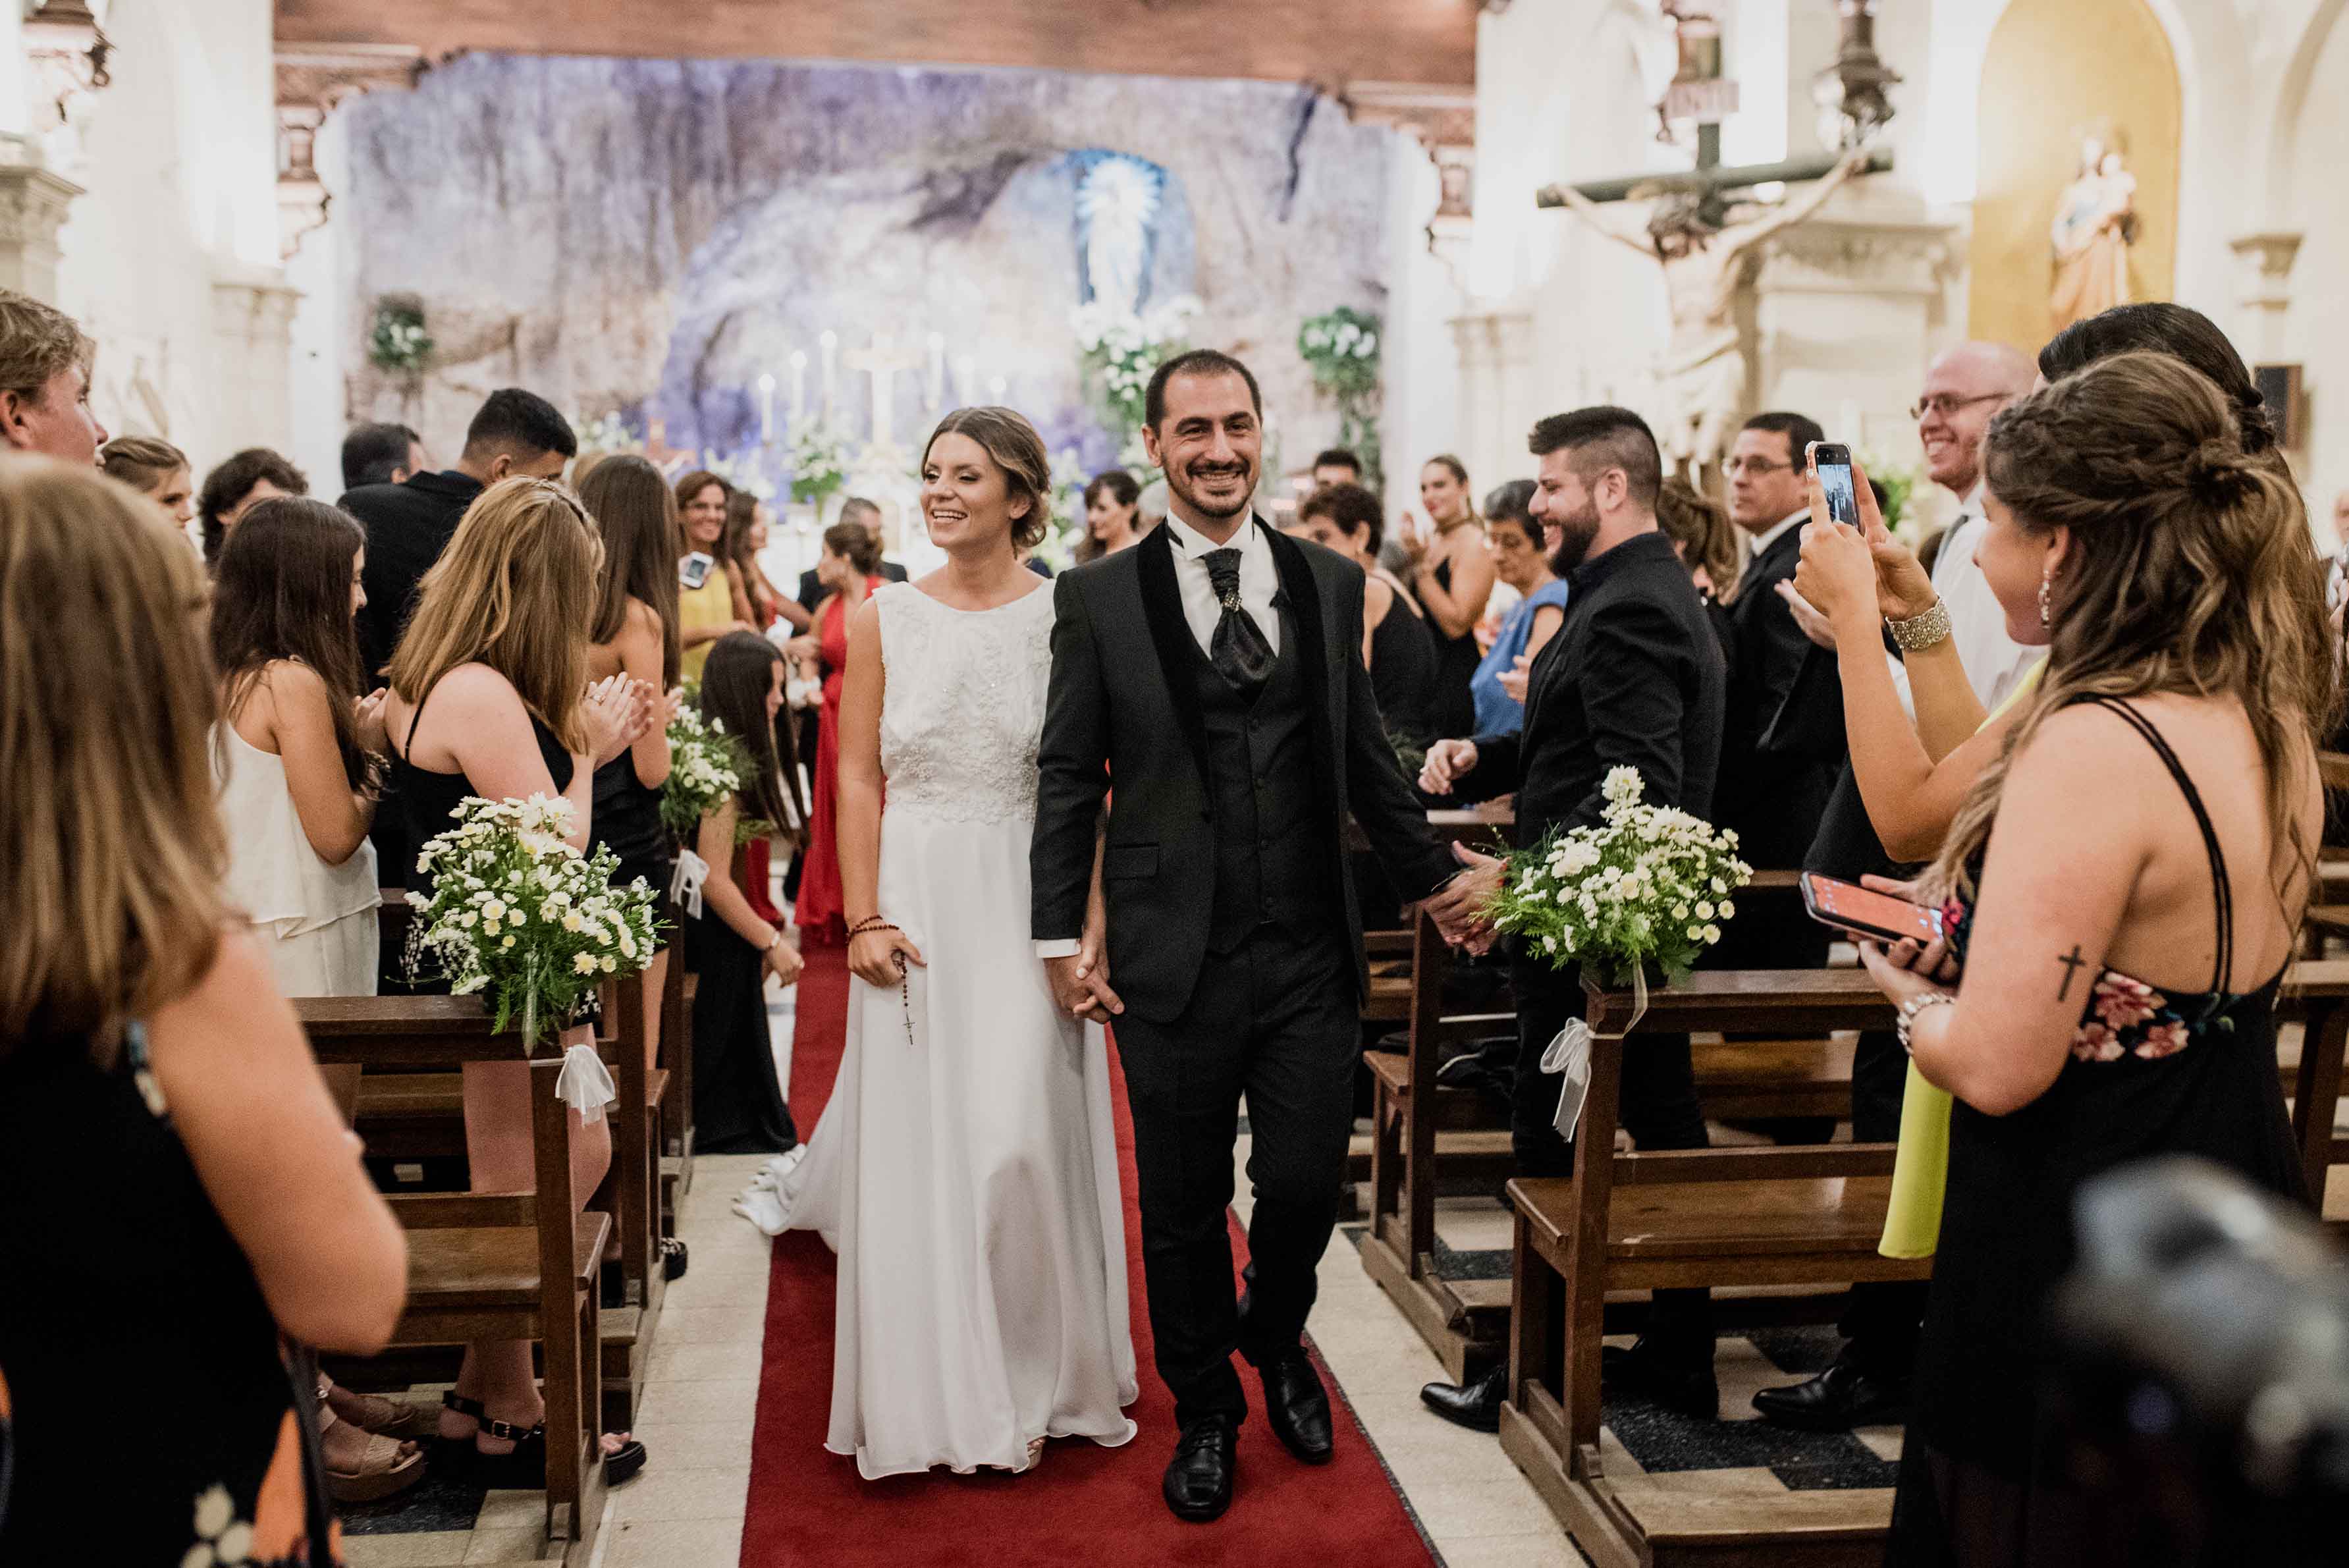 Fotos de la boda de Ani y Munir en Rosario realizadas por Bucle Fotografias Flor Bosio y Caro Clerici